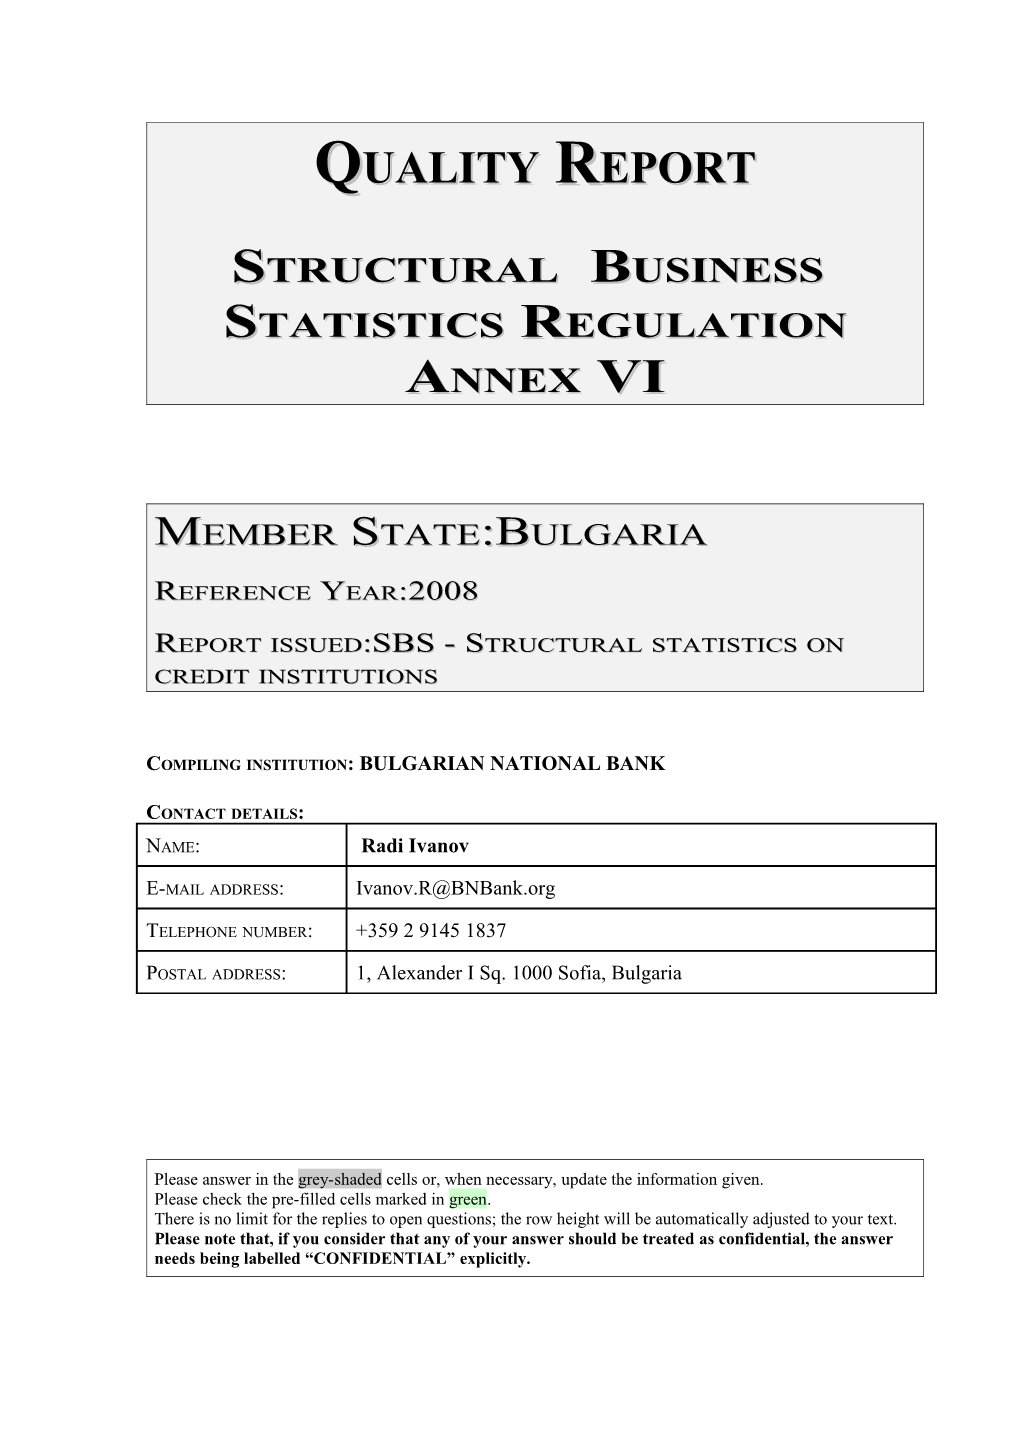 Structural Business Statistics Regulation Annex VI